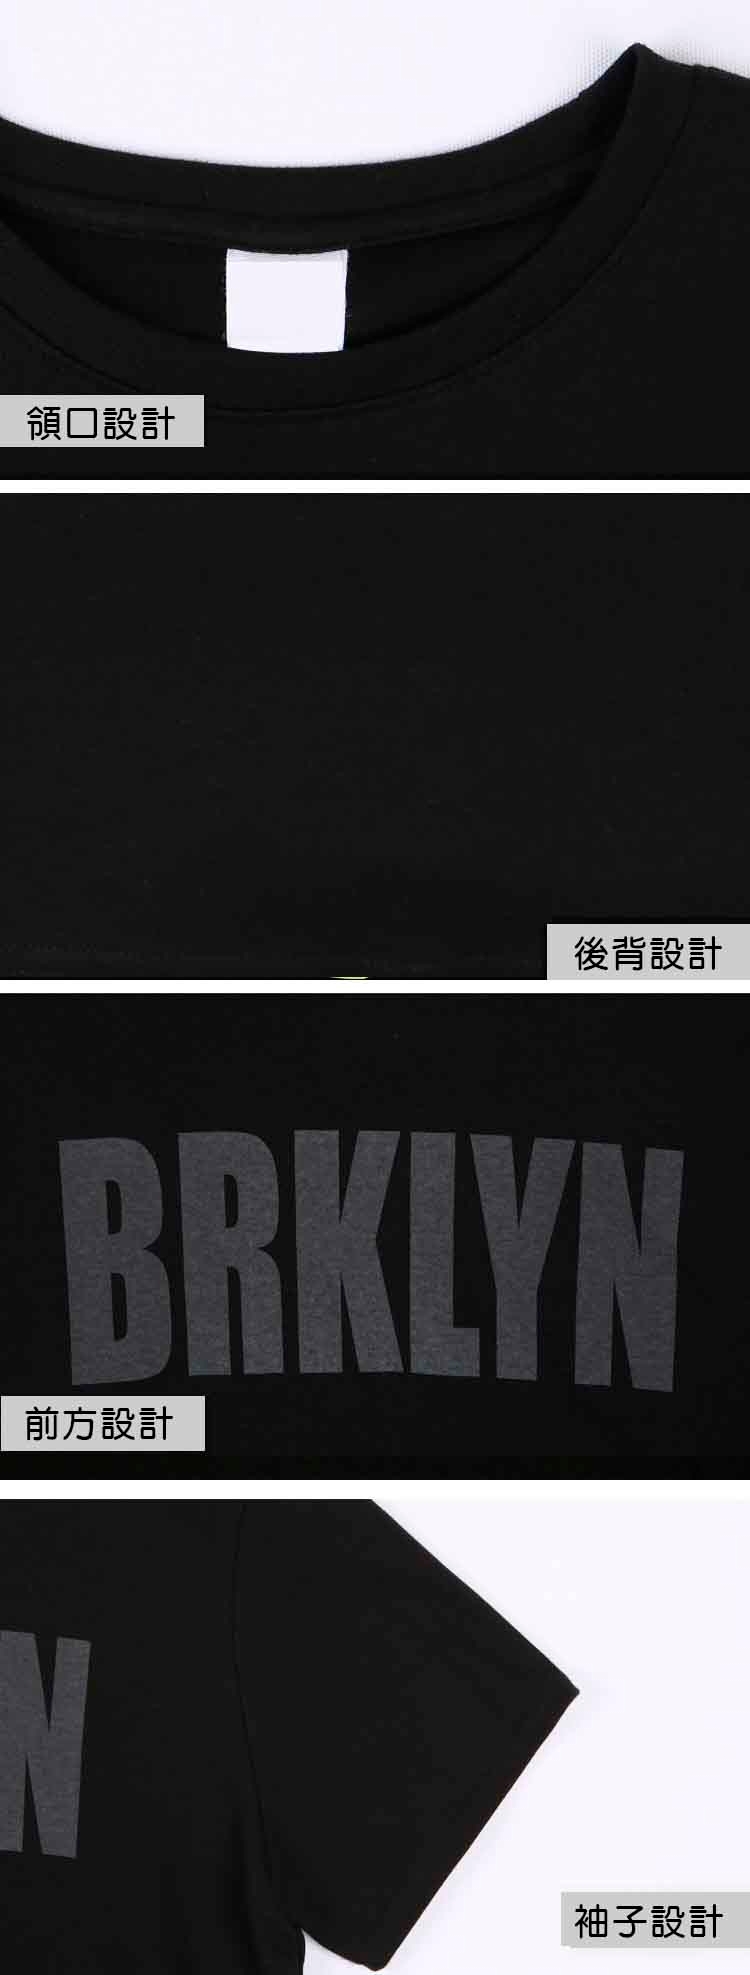 男人幫大尺碼 T8045 台灣製造英文字母BRKLYN加大尺碼純棉圖案T恤